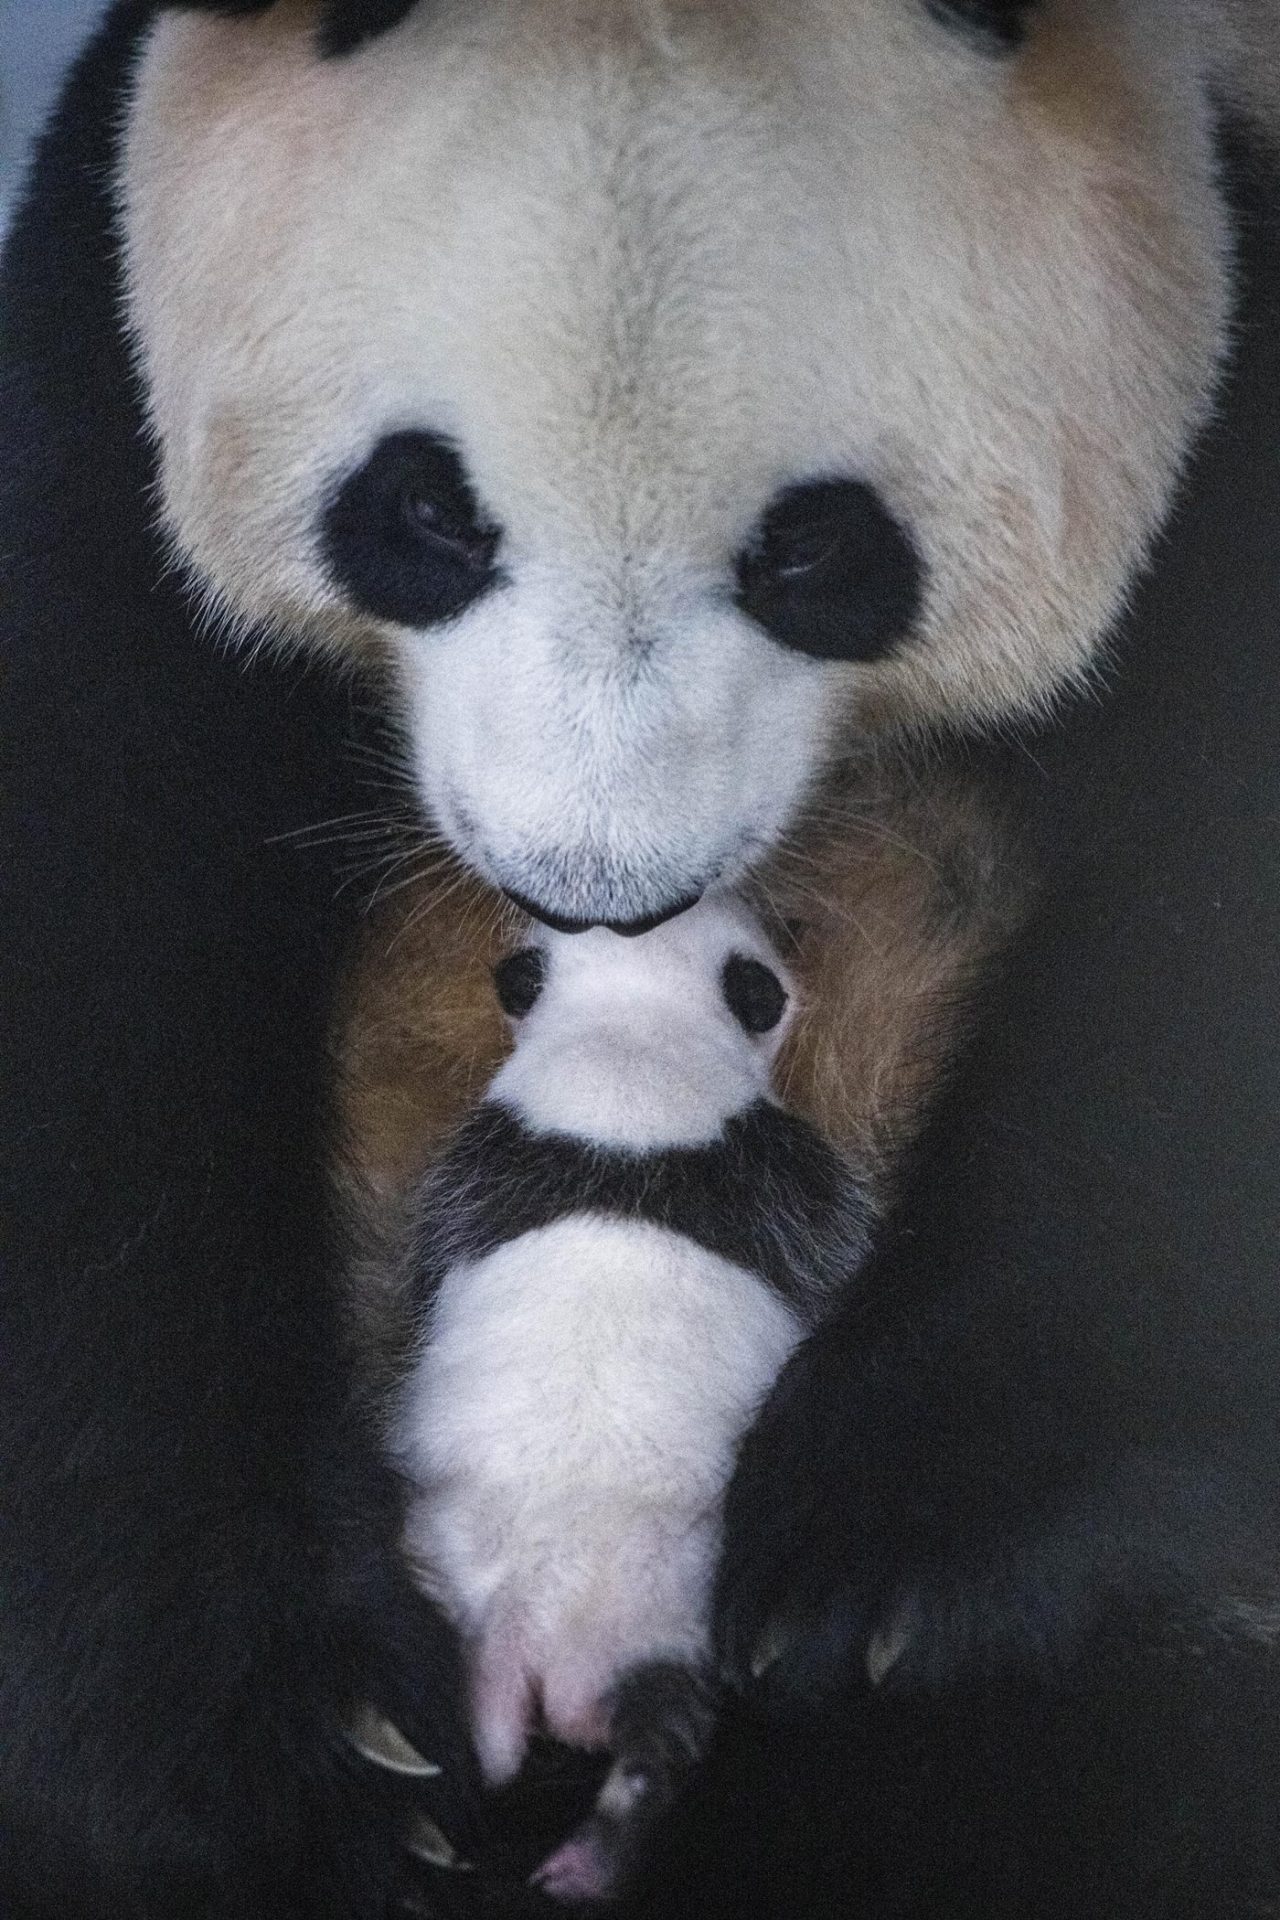 Anak panda raksasa berumur 50 hari 10 kali lebih berat dari berat lahirnya